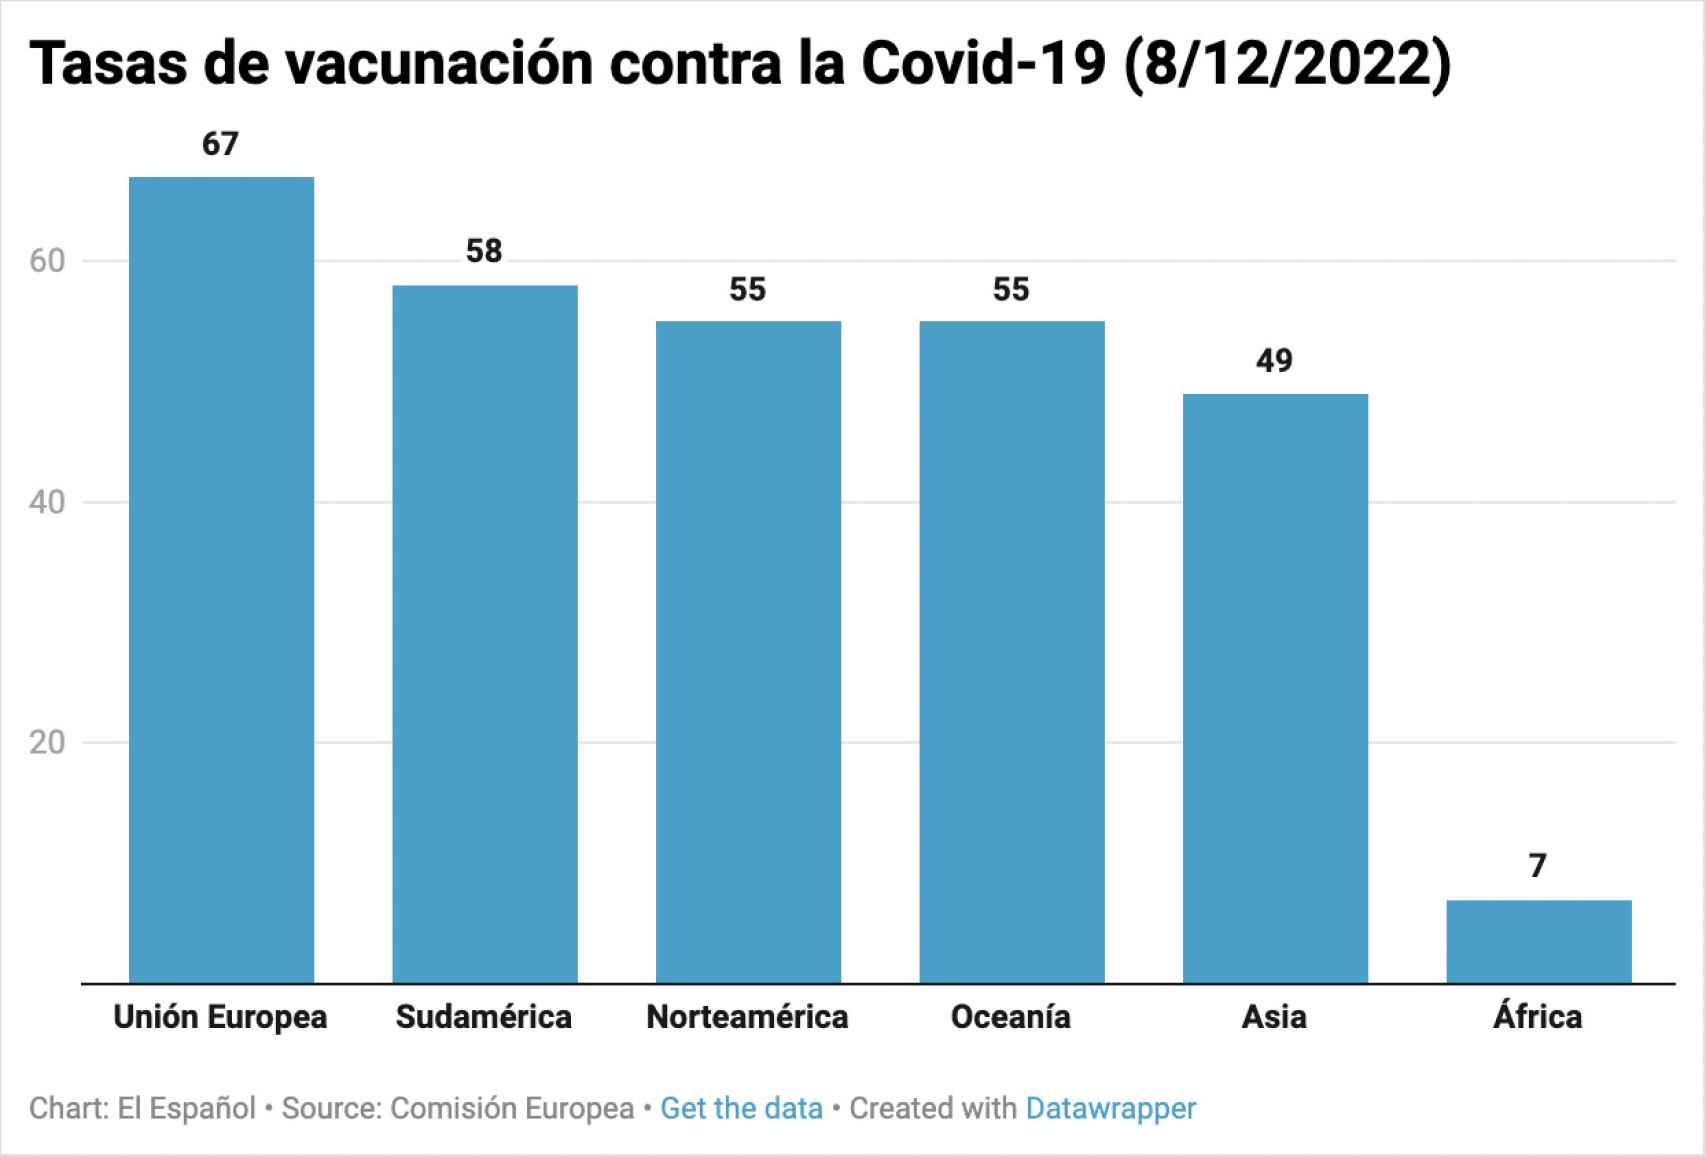 Tasa de vacunación contra la Covid-19 en los distintos continentes